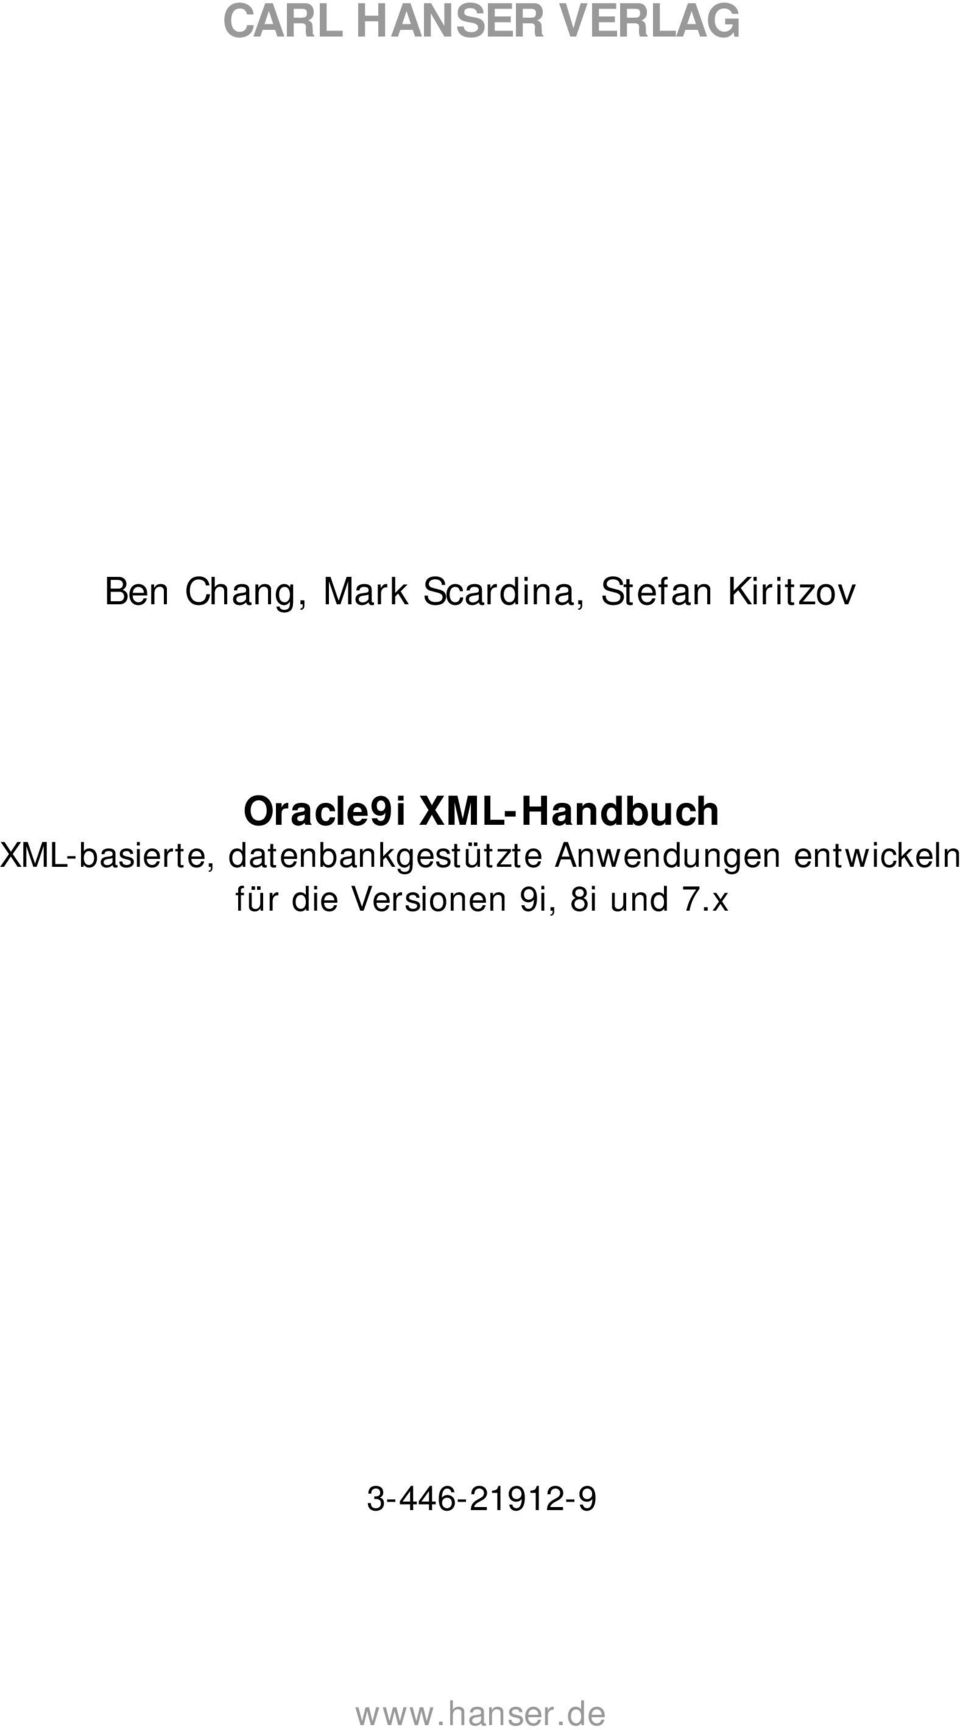 XML-basierte, datenbankgestützte Anwendungen